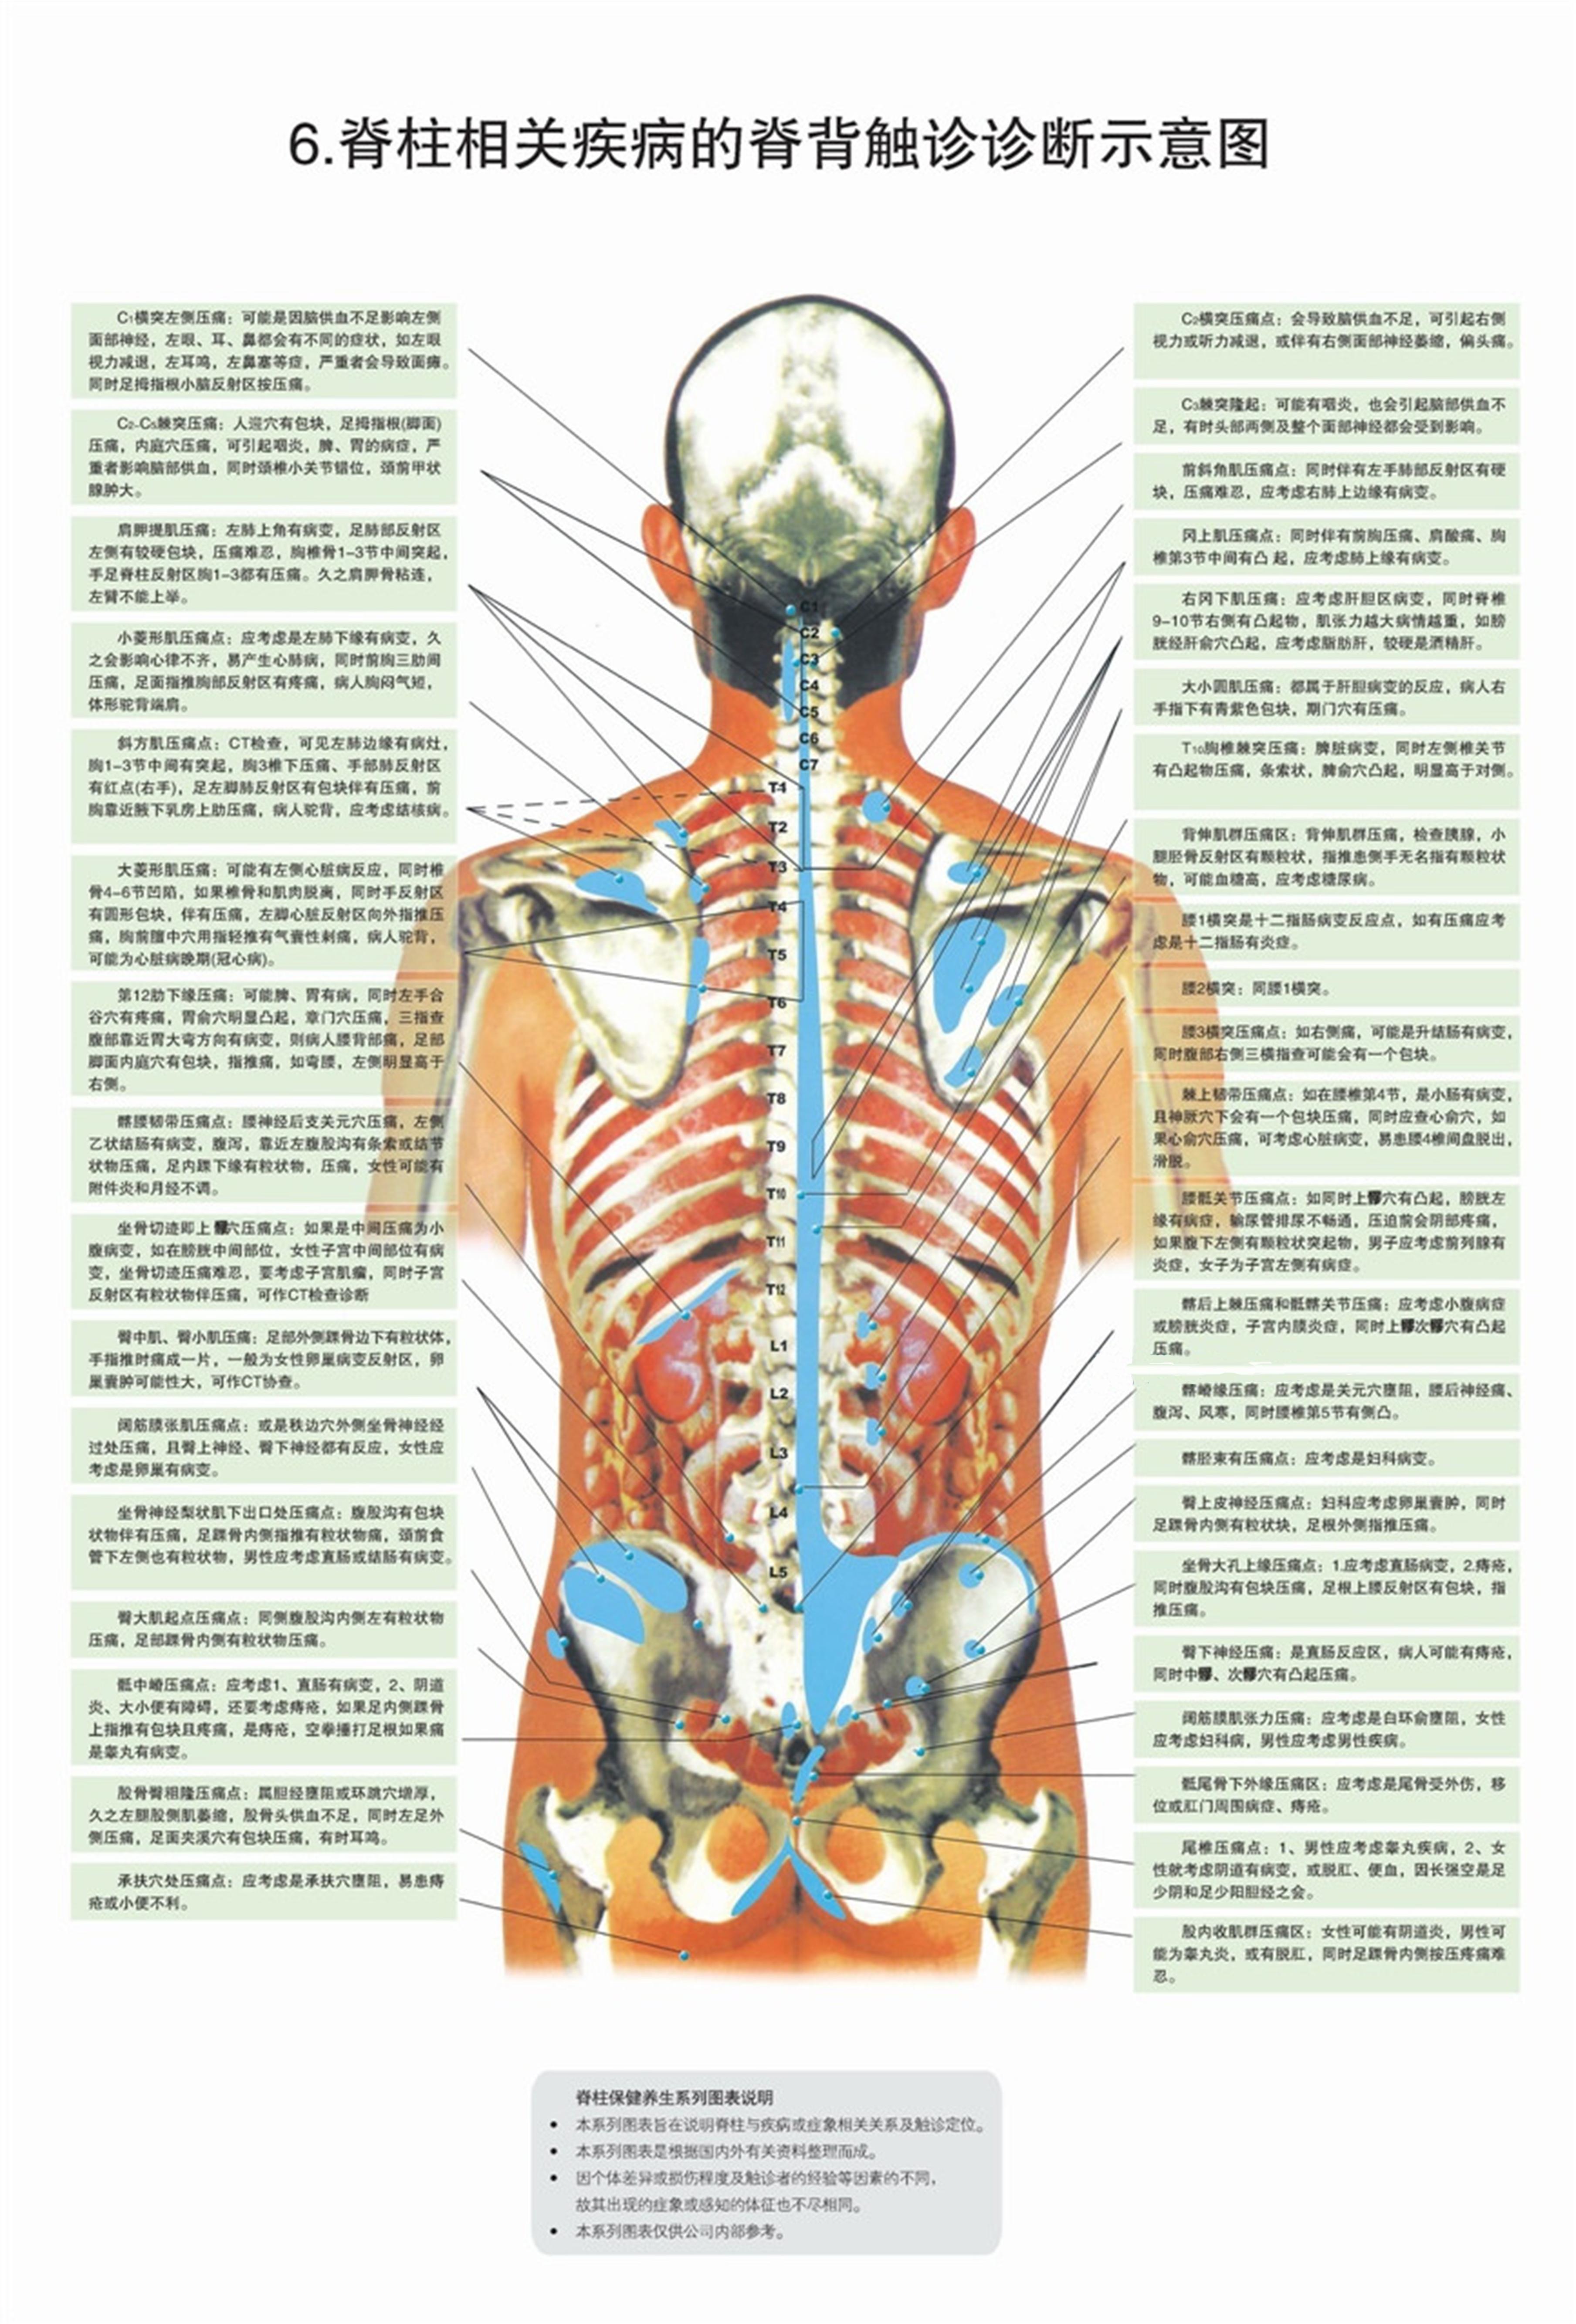 脊柱相关疾病的脊背触诊诊断示意图5,脊柱相关疾病的经穴及皮纹关系图